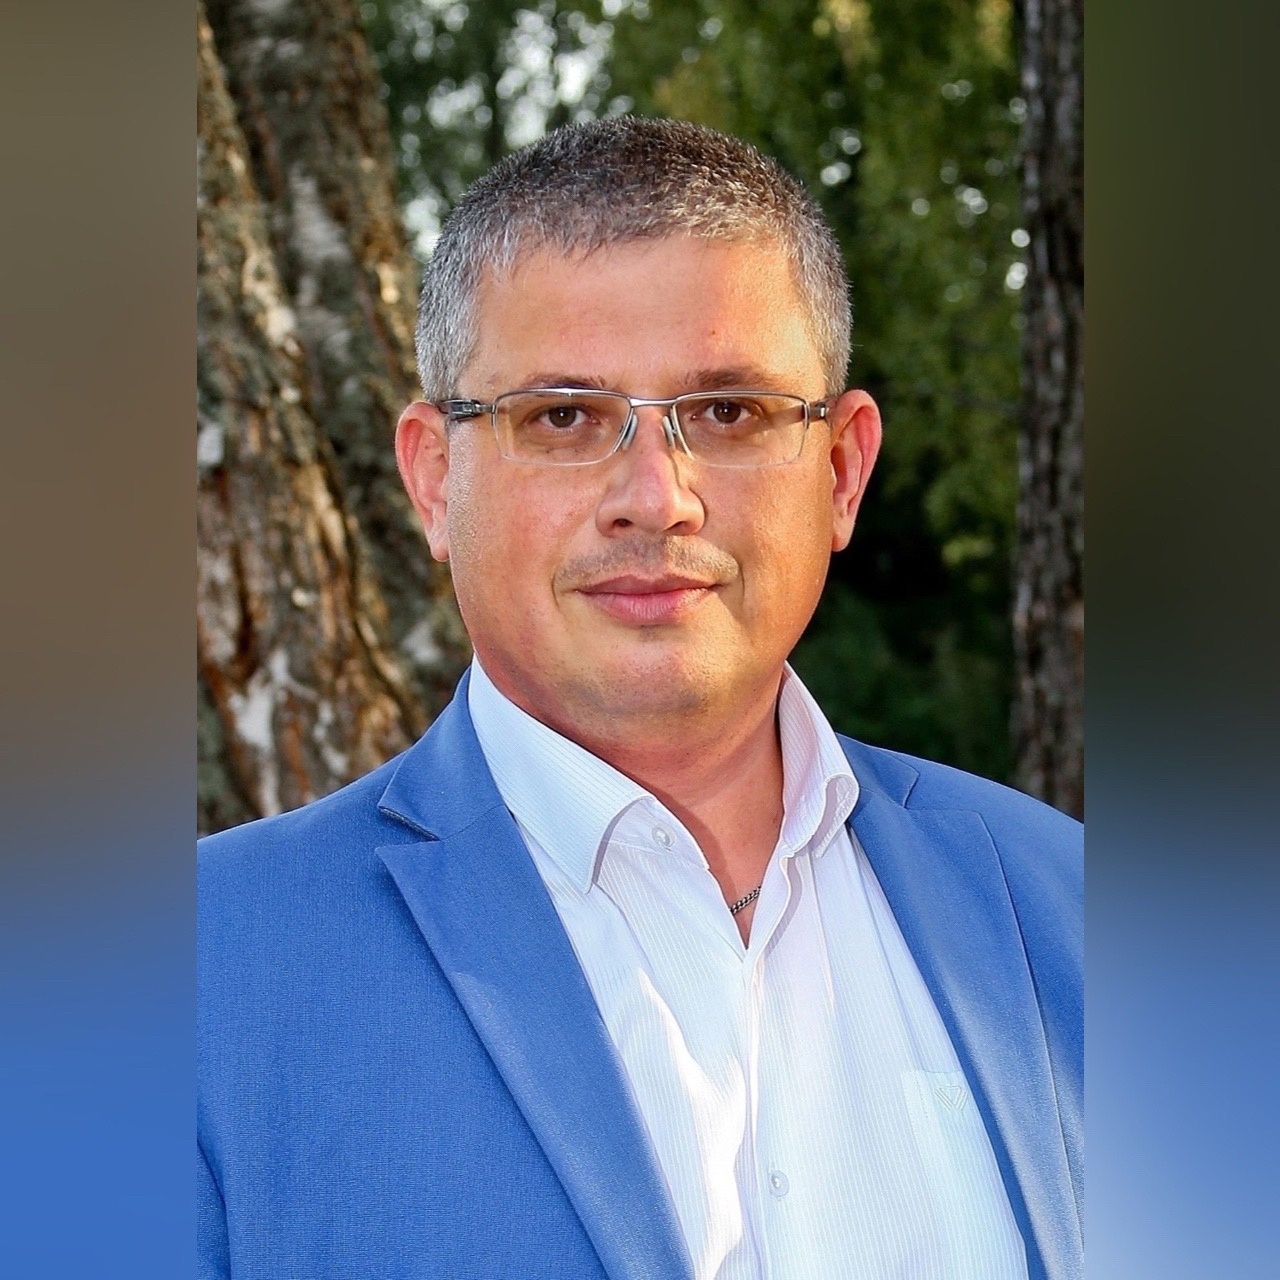 Александр Новиков назначен врип главы города Смоленска